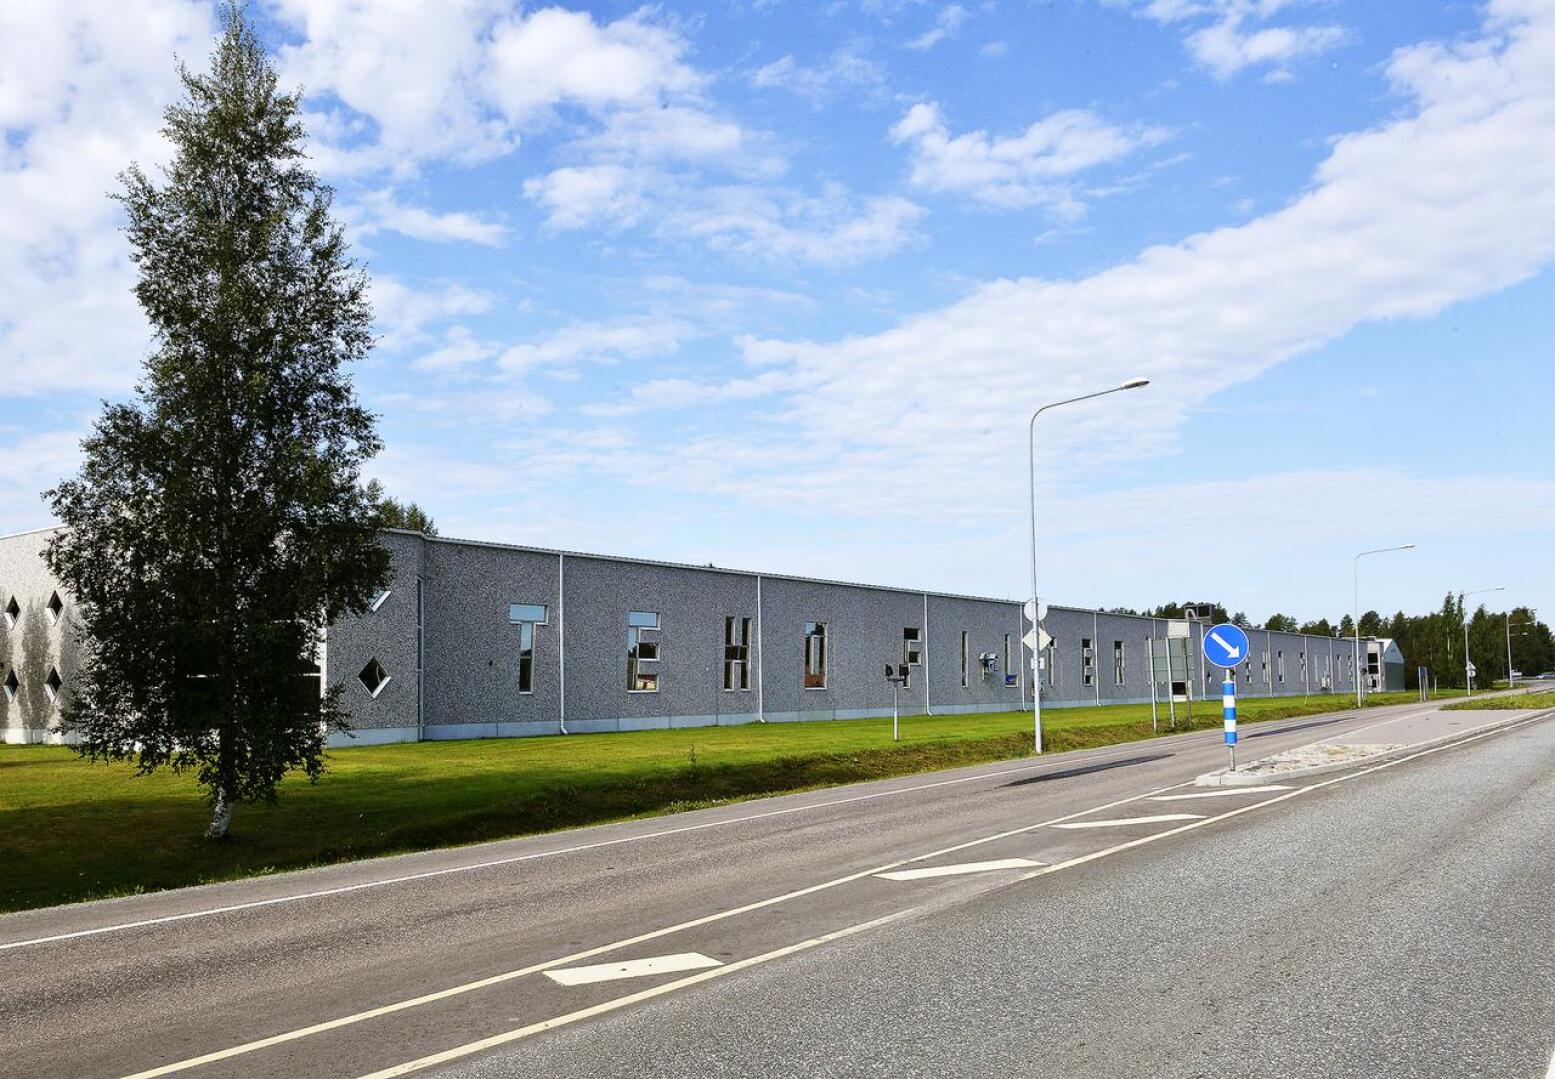 Teho-Filterin tilat sijaitsevat Kajaanintien varrella Sievissä. Suodatinvalmistajana tunnettu yritys aikoo jatkossakin valmistaa kasvomaskeja ja hengityssuojaimia.